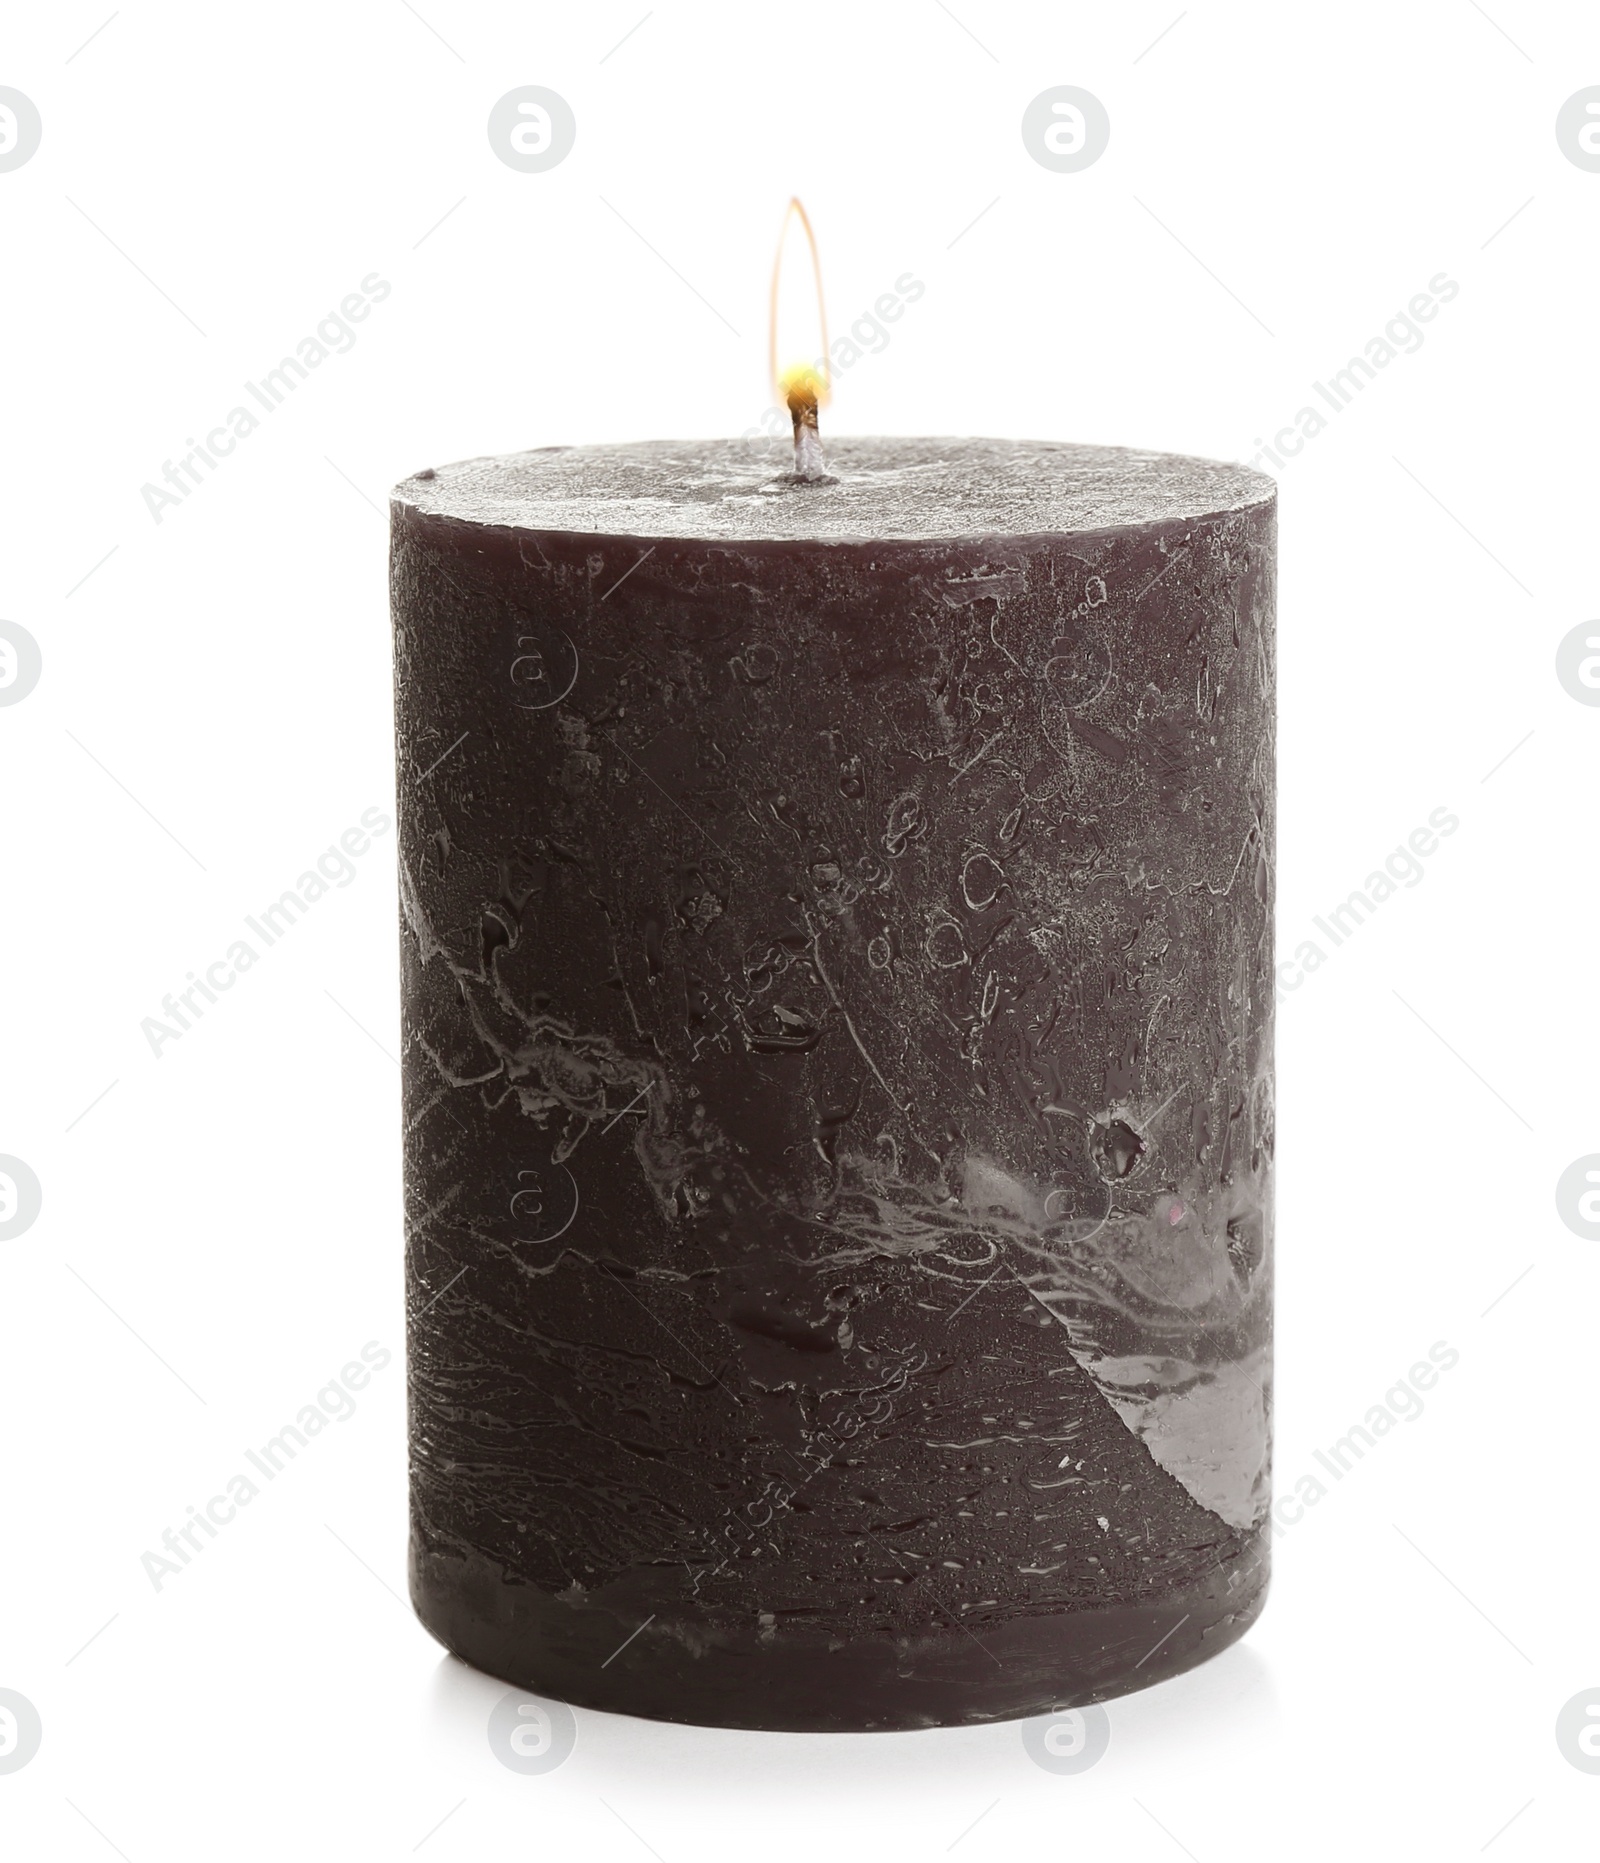 Photo of Dark burning decorative candle isolated on white